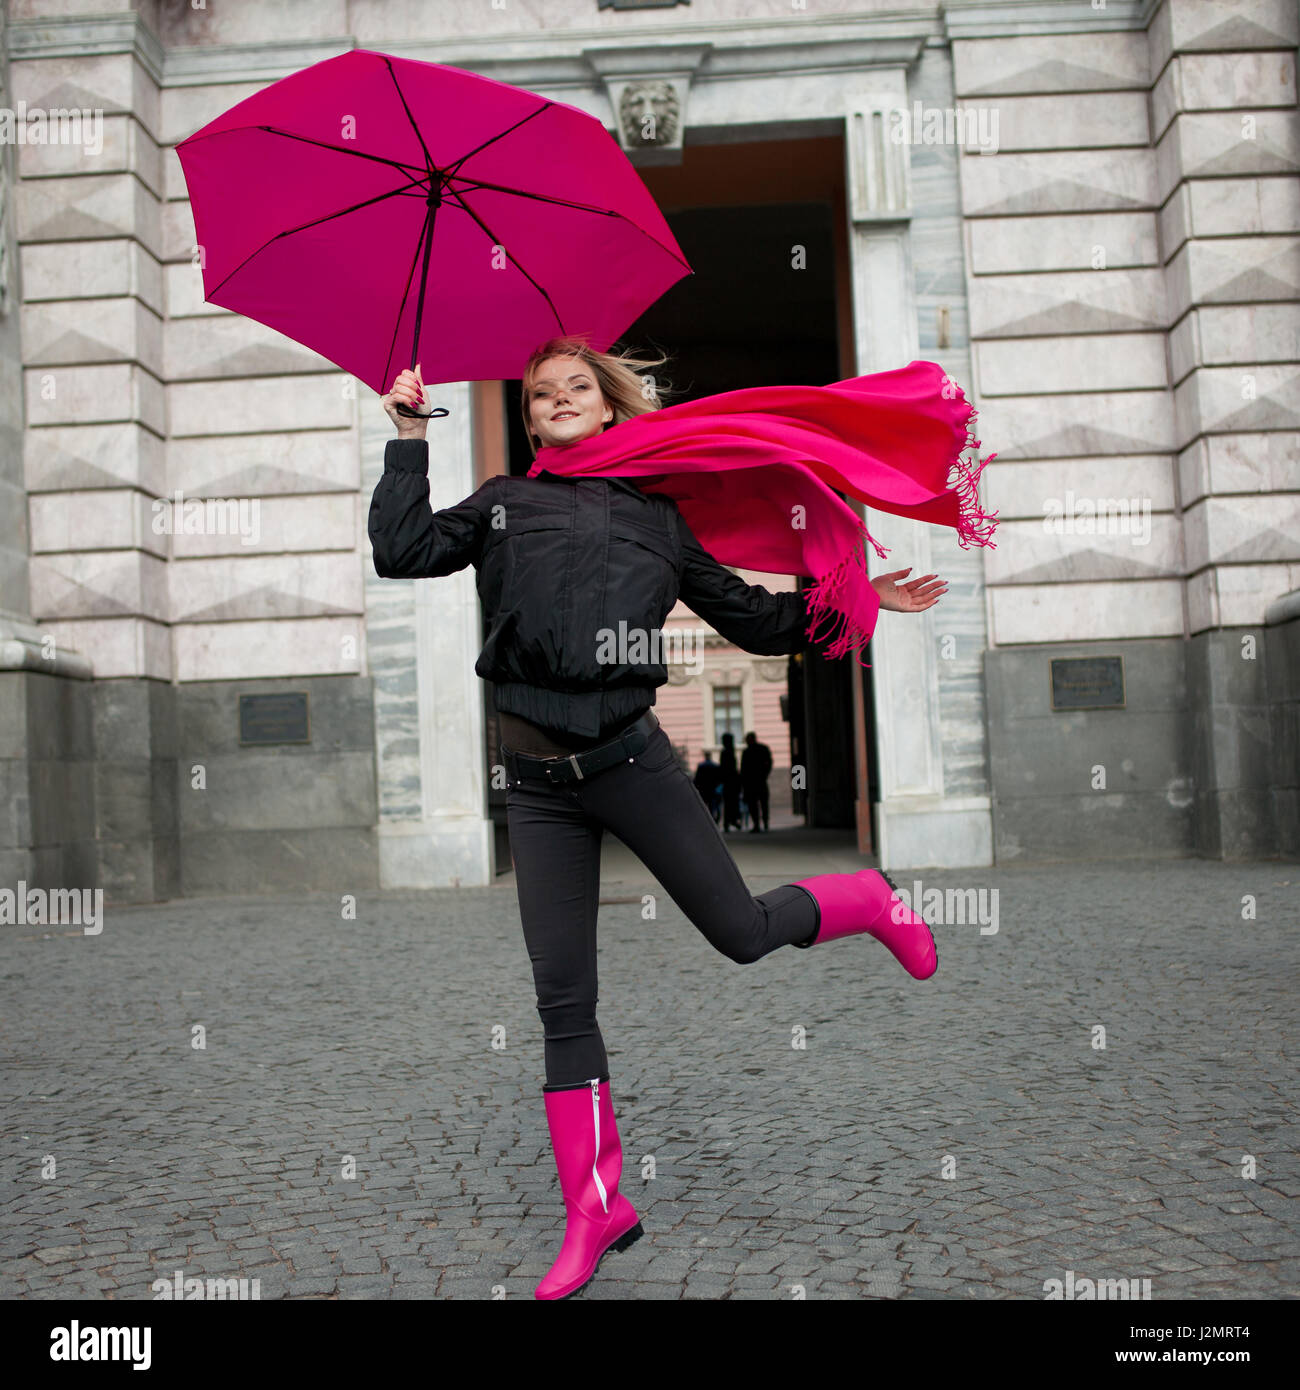 Très belle jeune femme blonde et heureuse avec parapluie colorés sur la  rue. Fille dans une écharpe rose vif, des bottes en caoutchouc et parapluie  marcher dans une ville pluvieuse Photo Stock -